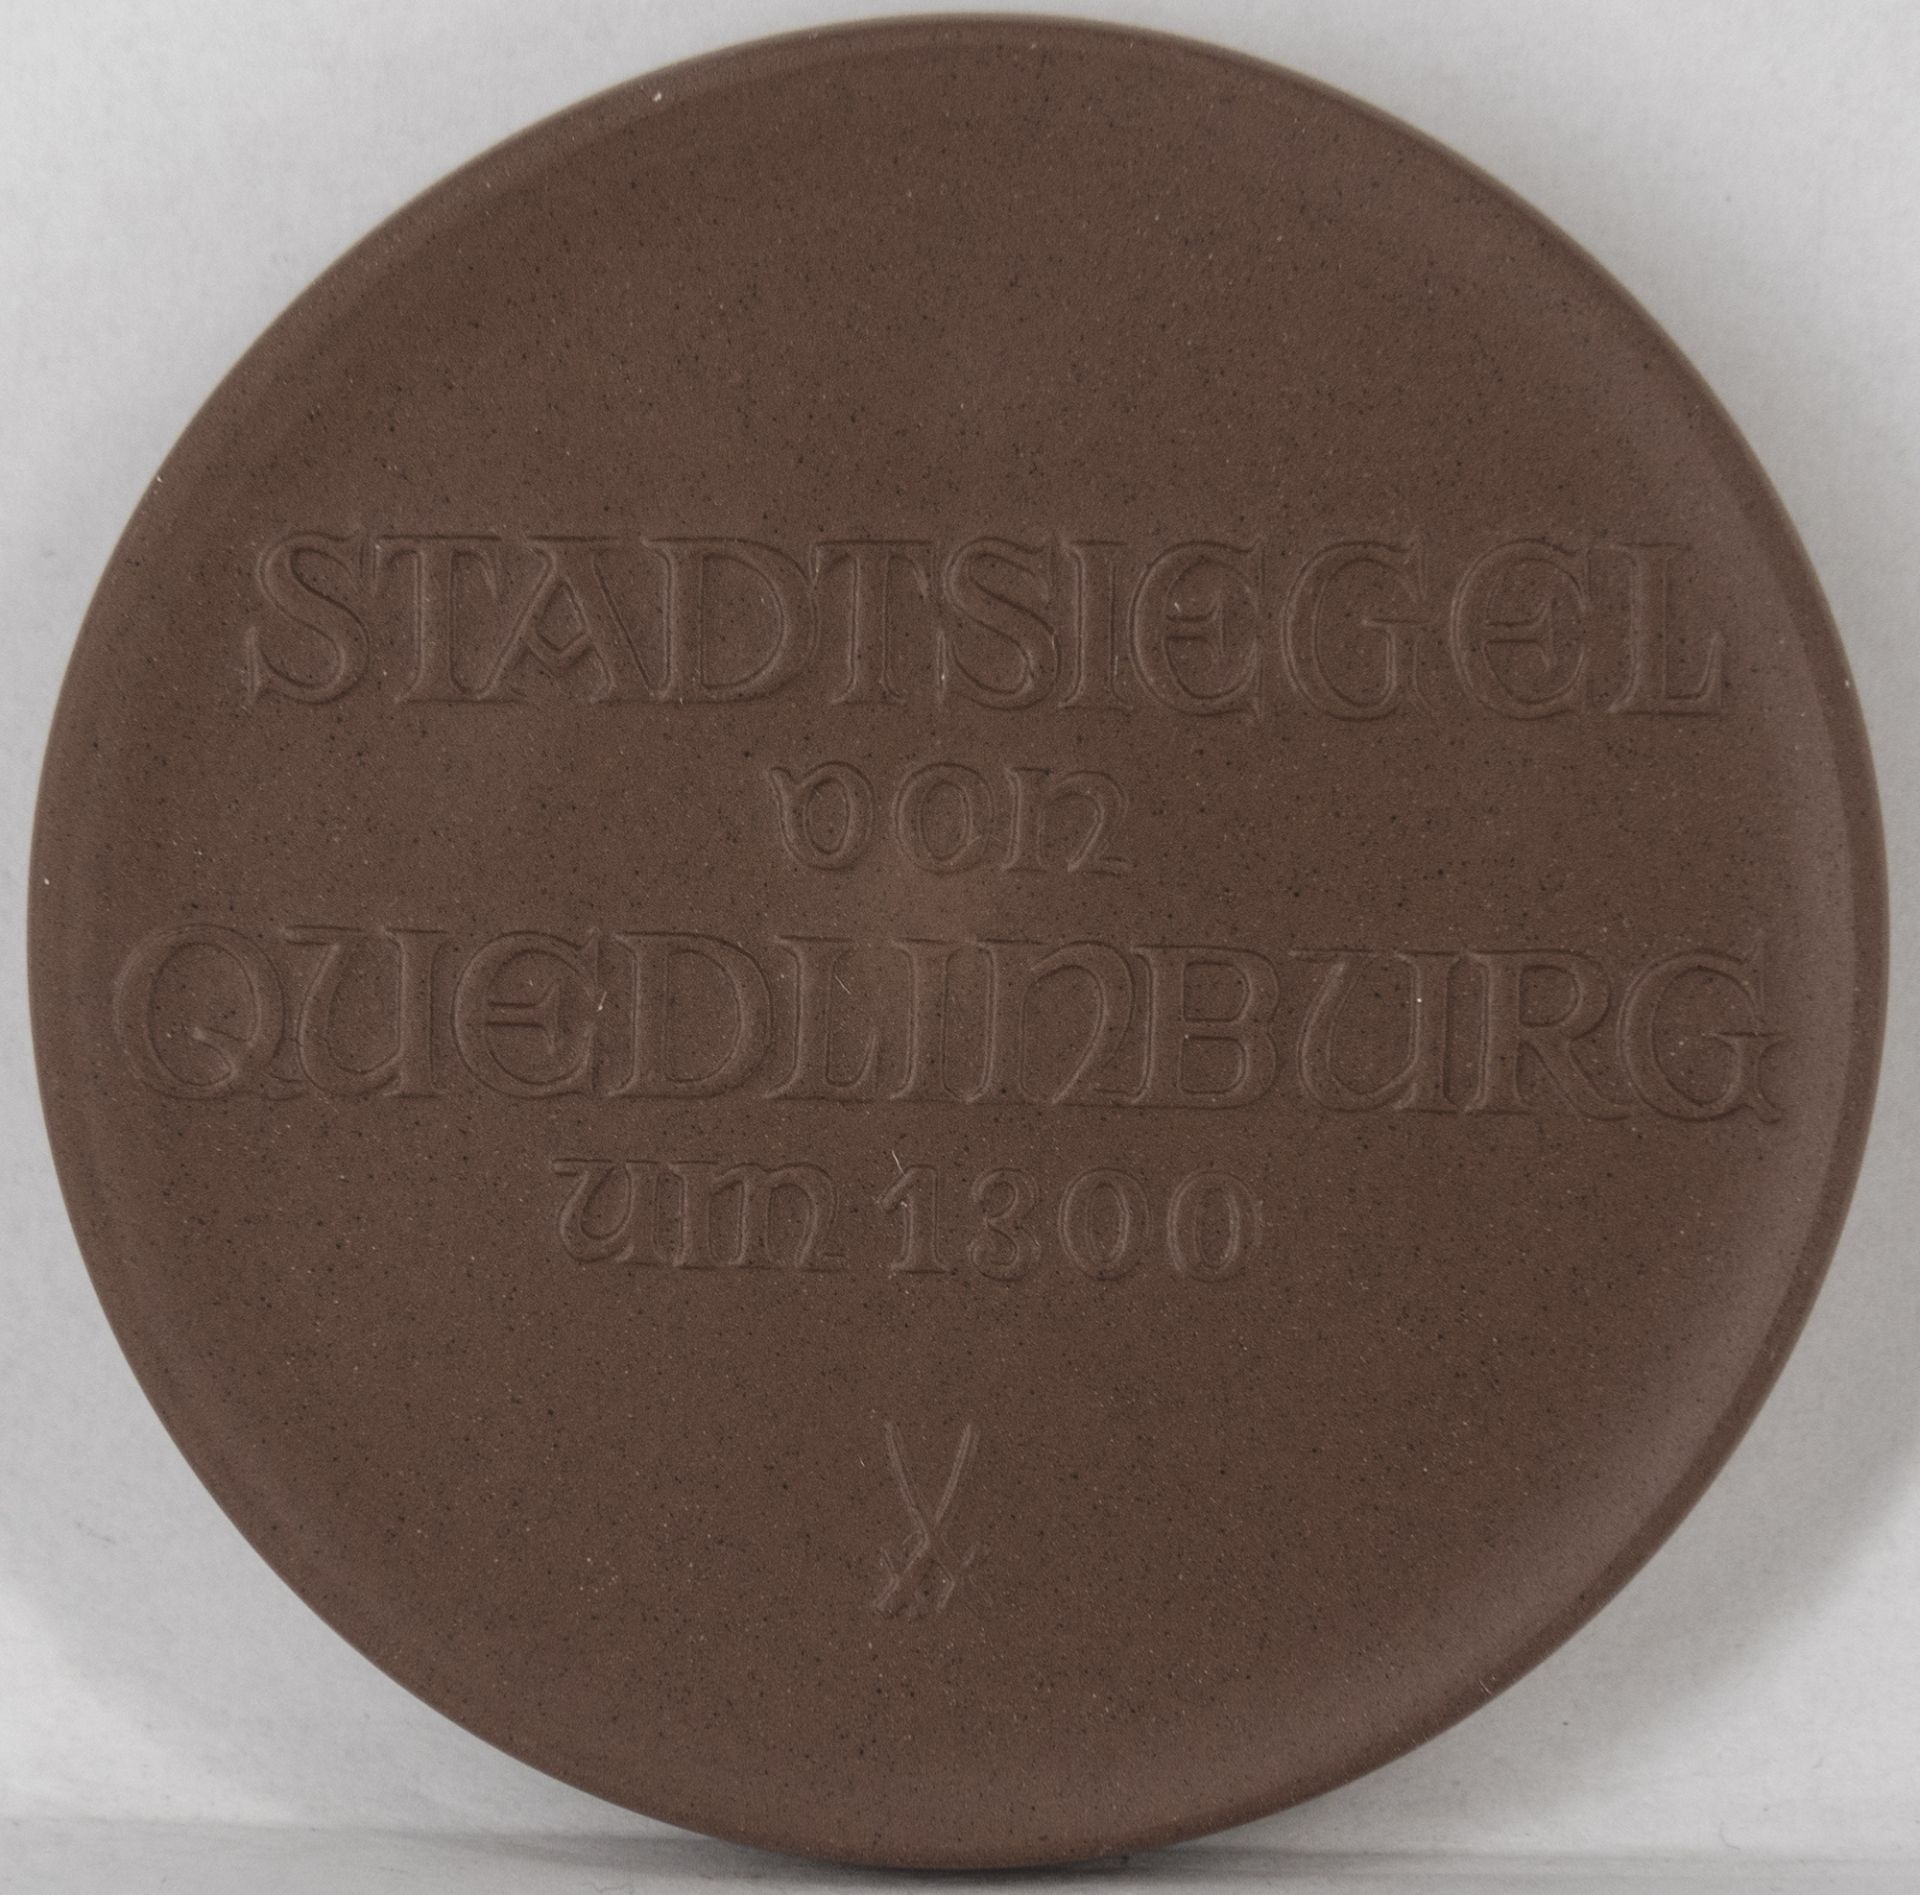 Porzellan - Medaille "Stadtsiegel von Quedlinburg um 1300", Meißen, Durchmesser: ca. 67 mm. - Bild 2 aus 2